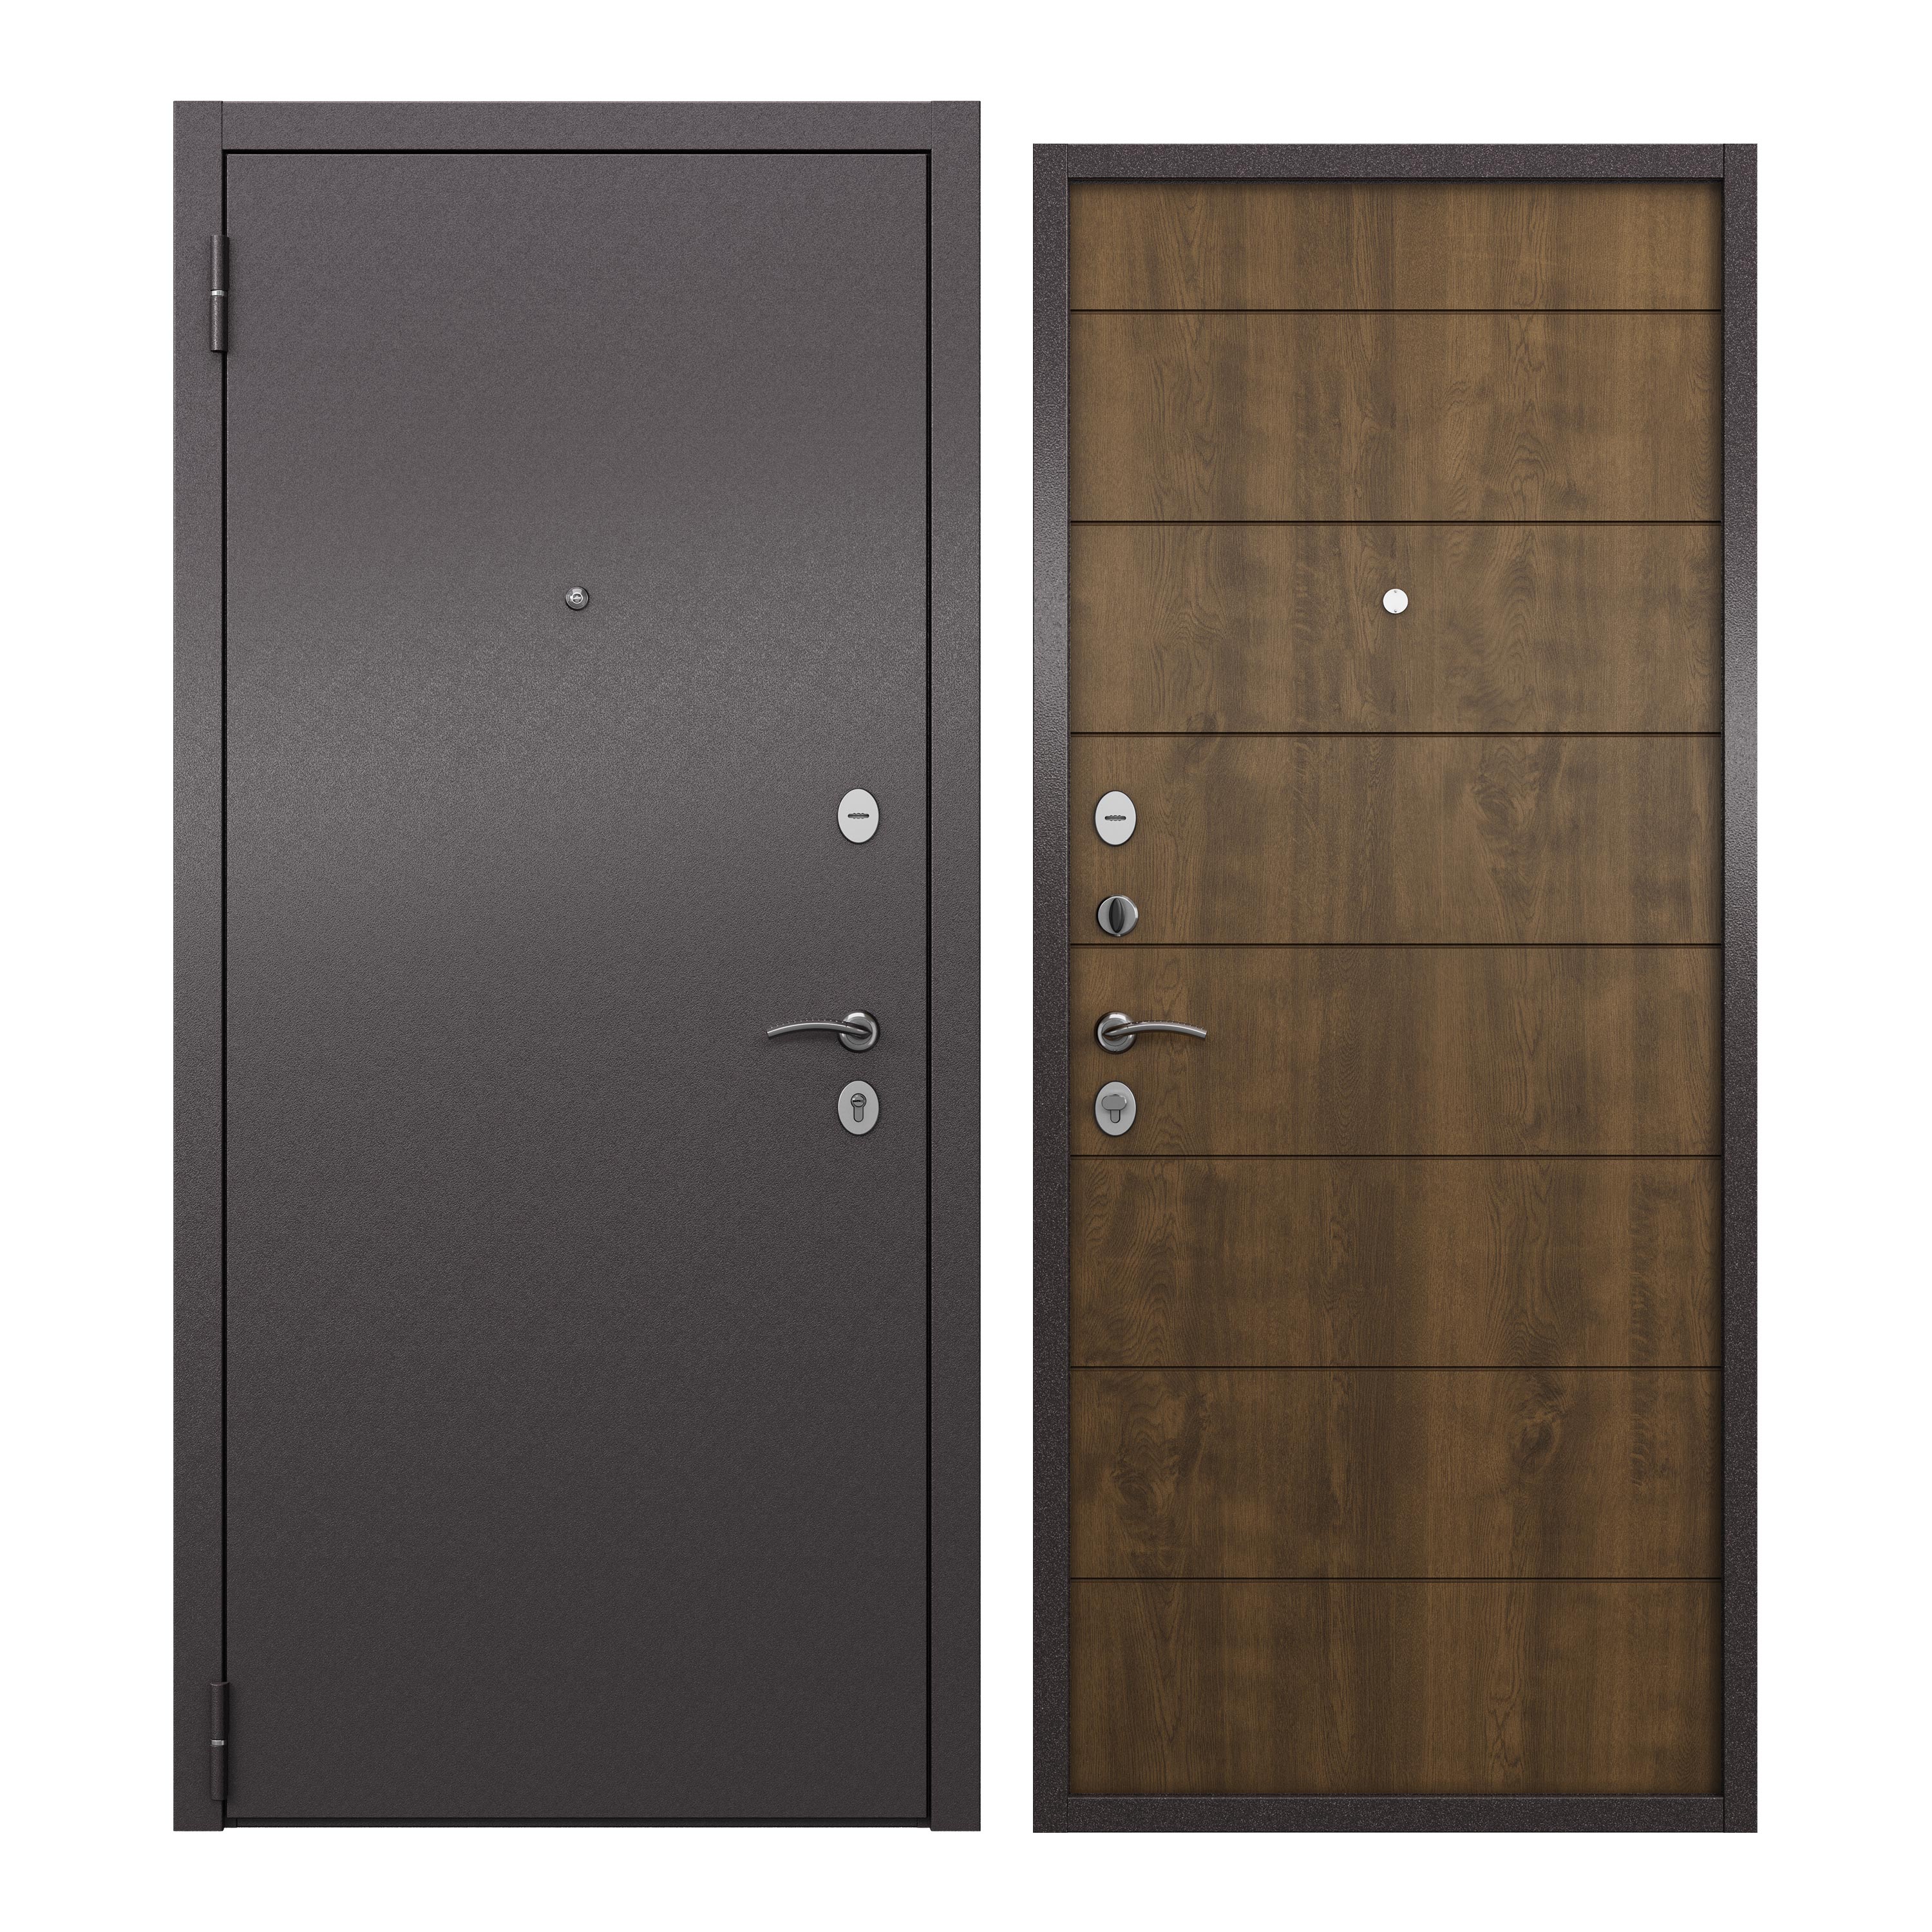 Дверь входная для квартиры ProLine металлическая Apartment 860х2050, левая, коричневый дверь входная дверной континент термаль экстра левая медный антик лиственница белая 860х2050 мм